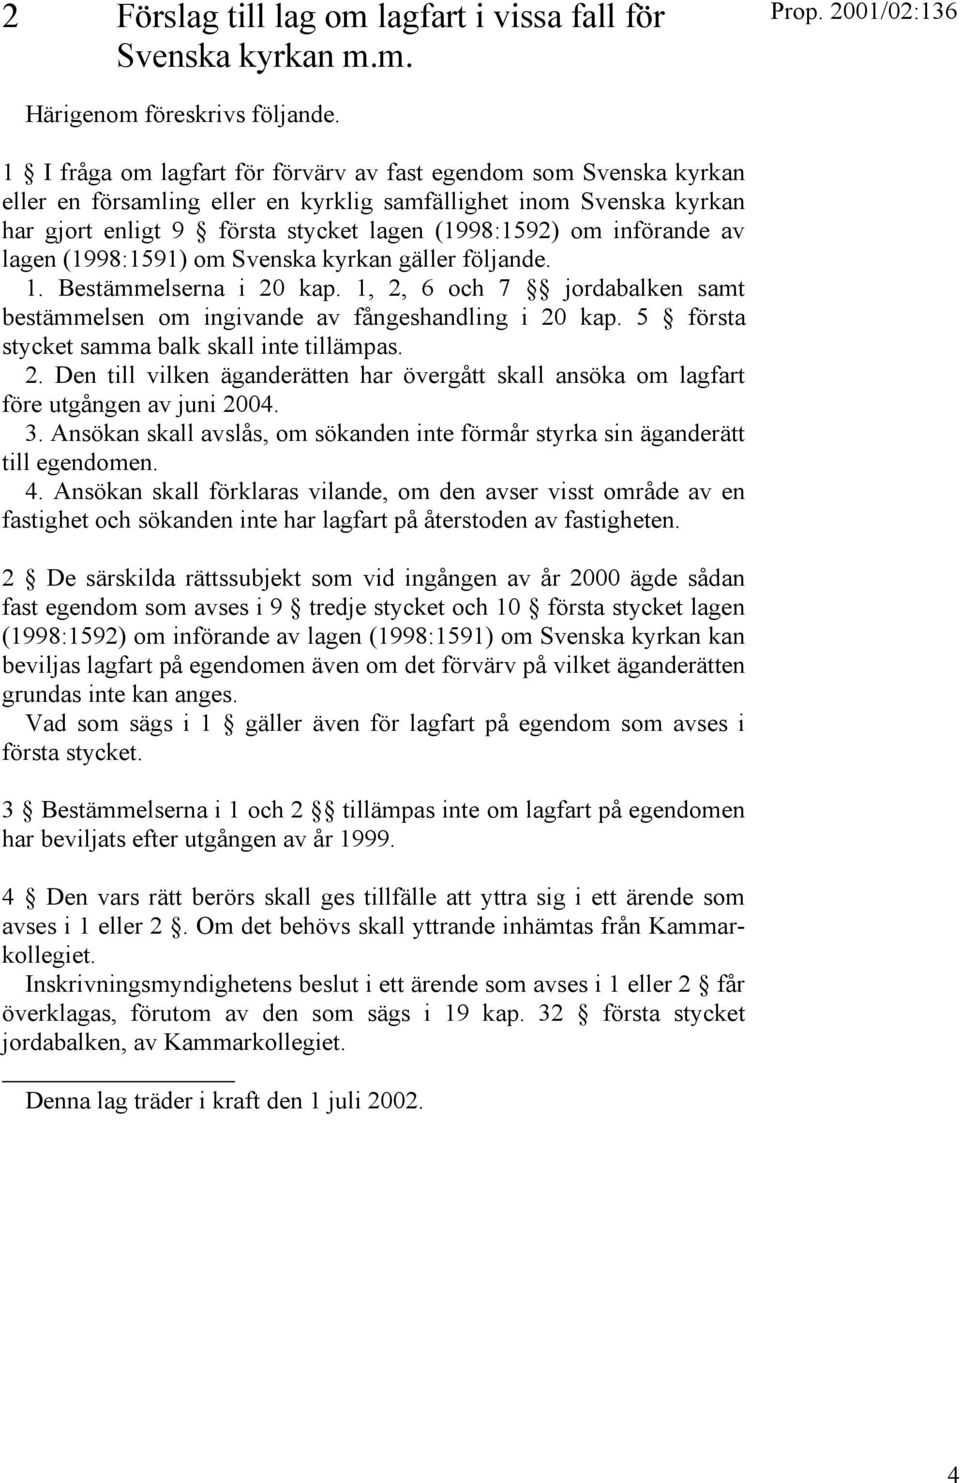 införande av lagen (1998:1591) om Svenska kyrkan gäller följande. 1. Bestämmelserna i 20 kap. 1, 2, 6 och 7 jordabalken samt bestämmelsen om ingivande av fångeshandling i 20 kap.